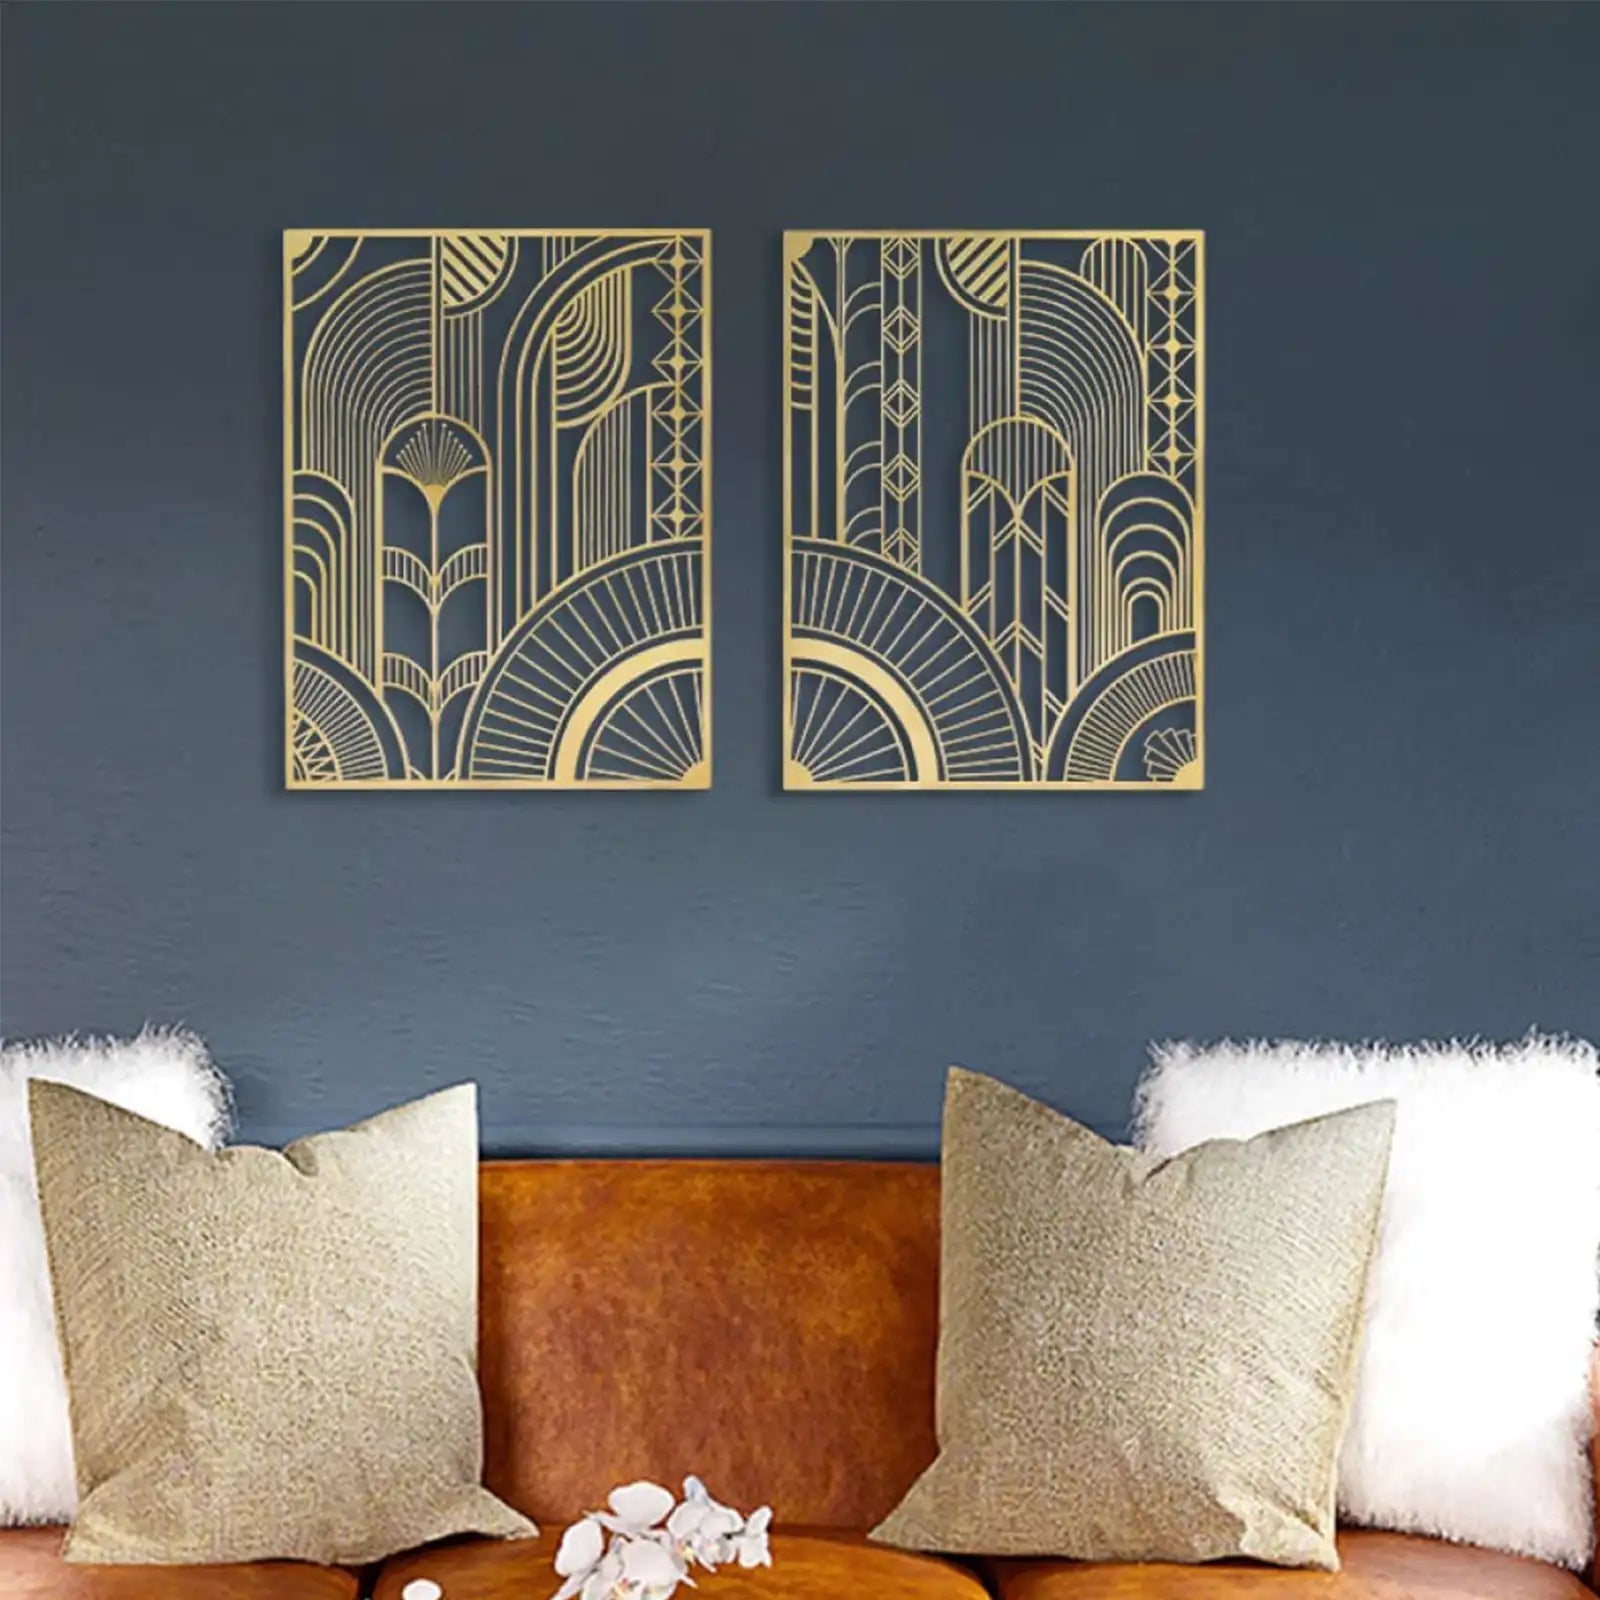 2 piezas de arte de pared de metal dorado, decoración abstracta geométrica para colgar en la pared de mediados de siglo para sala de estar, dormitorio, cocina